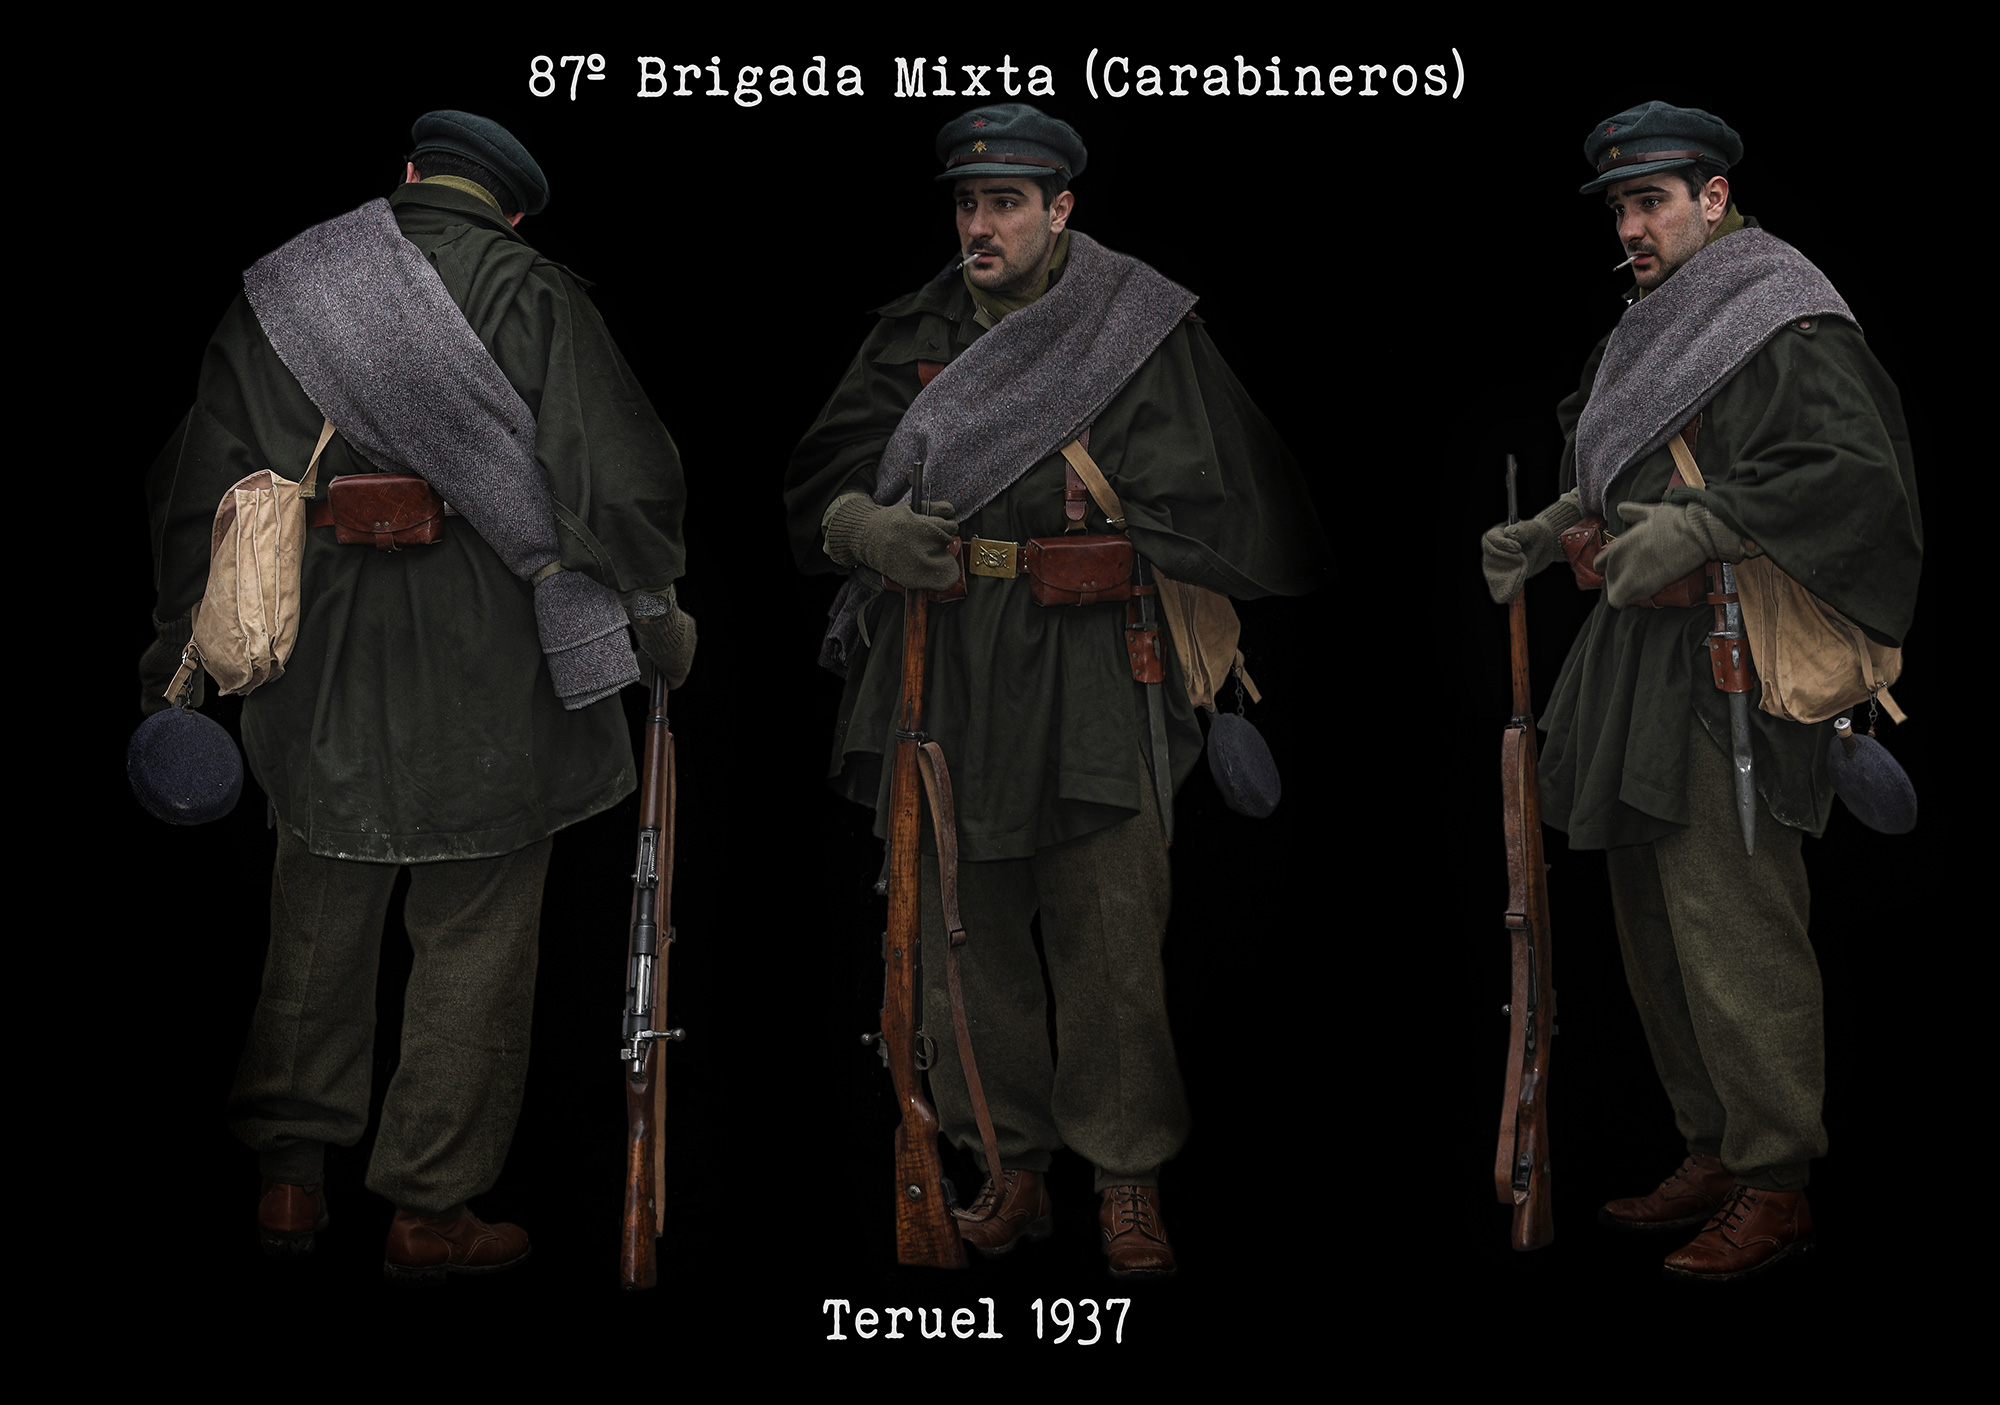 87º Brigada Mixta (Carabineros) (Teruel 1937)